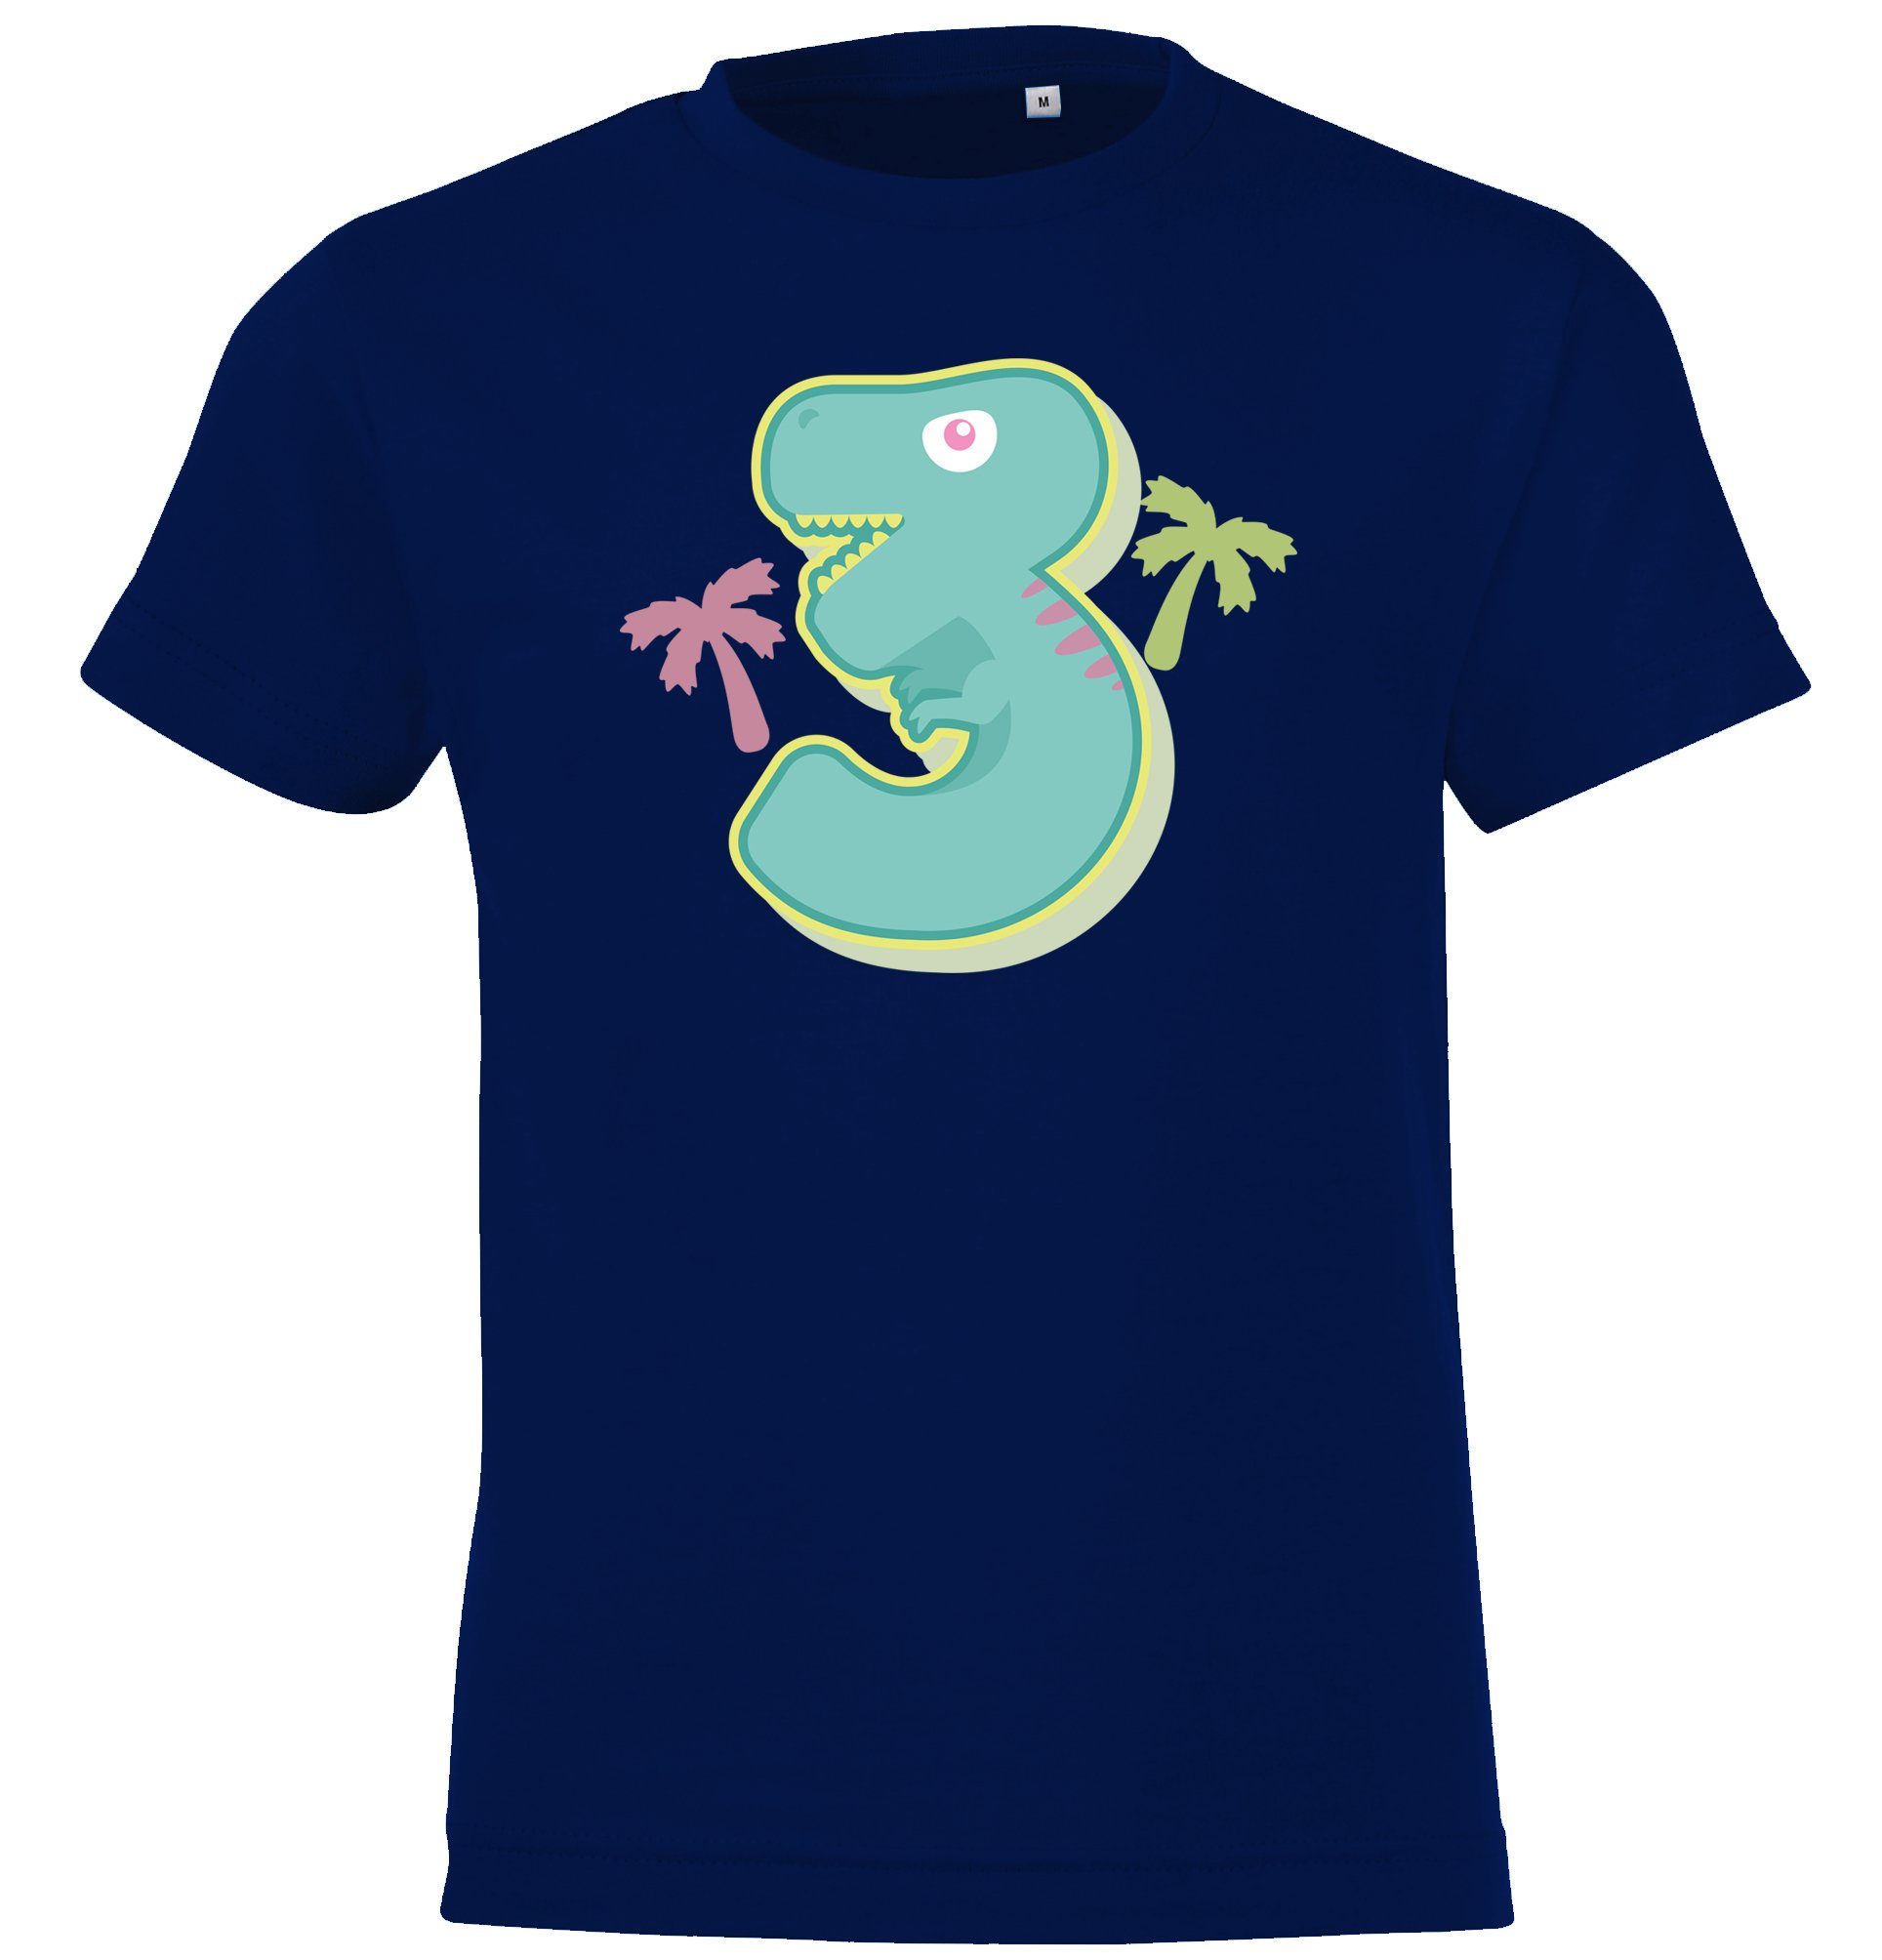 Alt für T-Shirt mit Jungen Jahre Youth T-Shirt 3 Navyblau lustigem Frontprint Designz Geburtstags